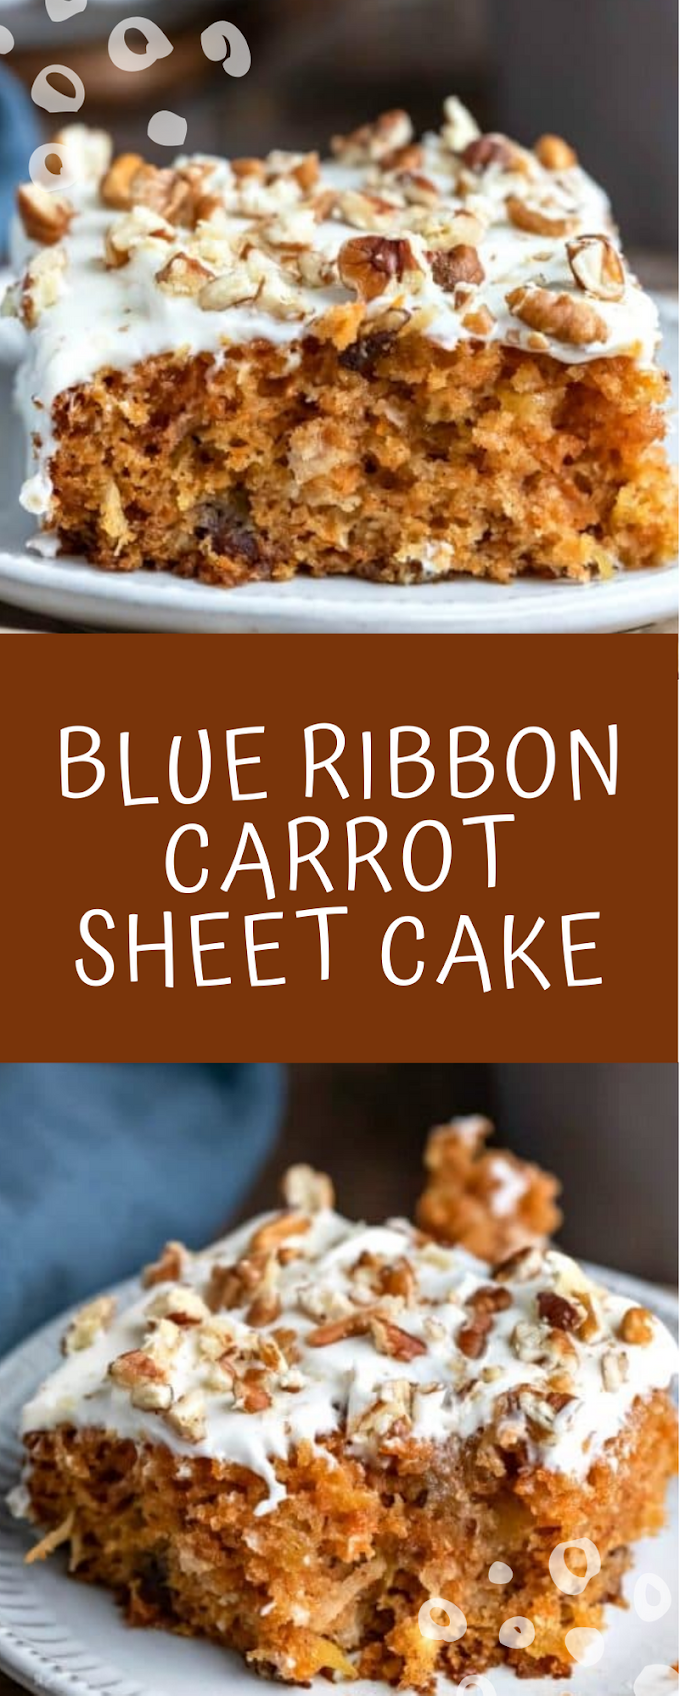 Blue Ribbon Carrot Sheet Cake